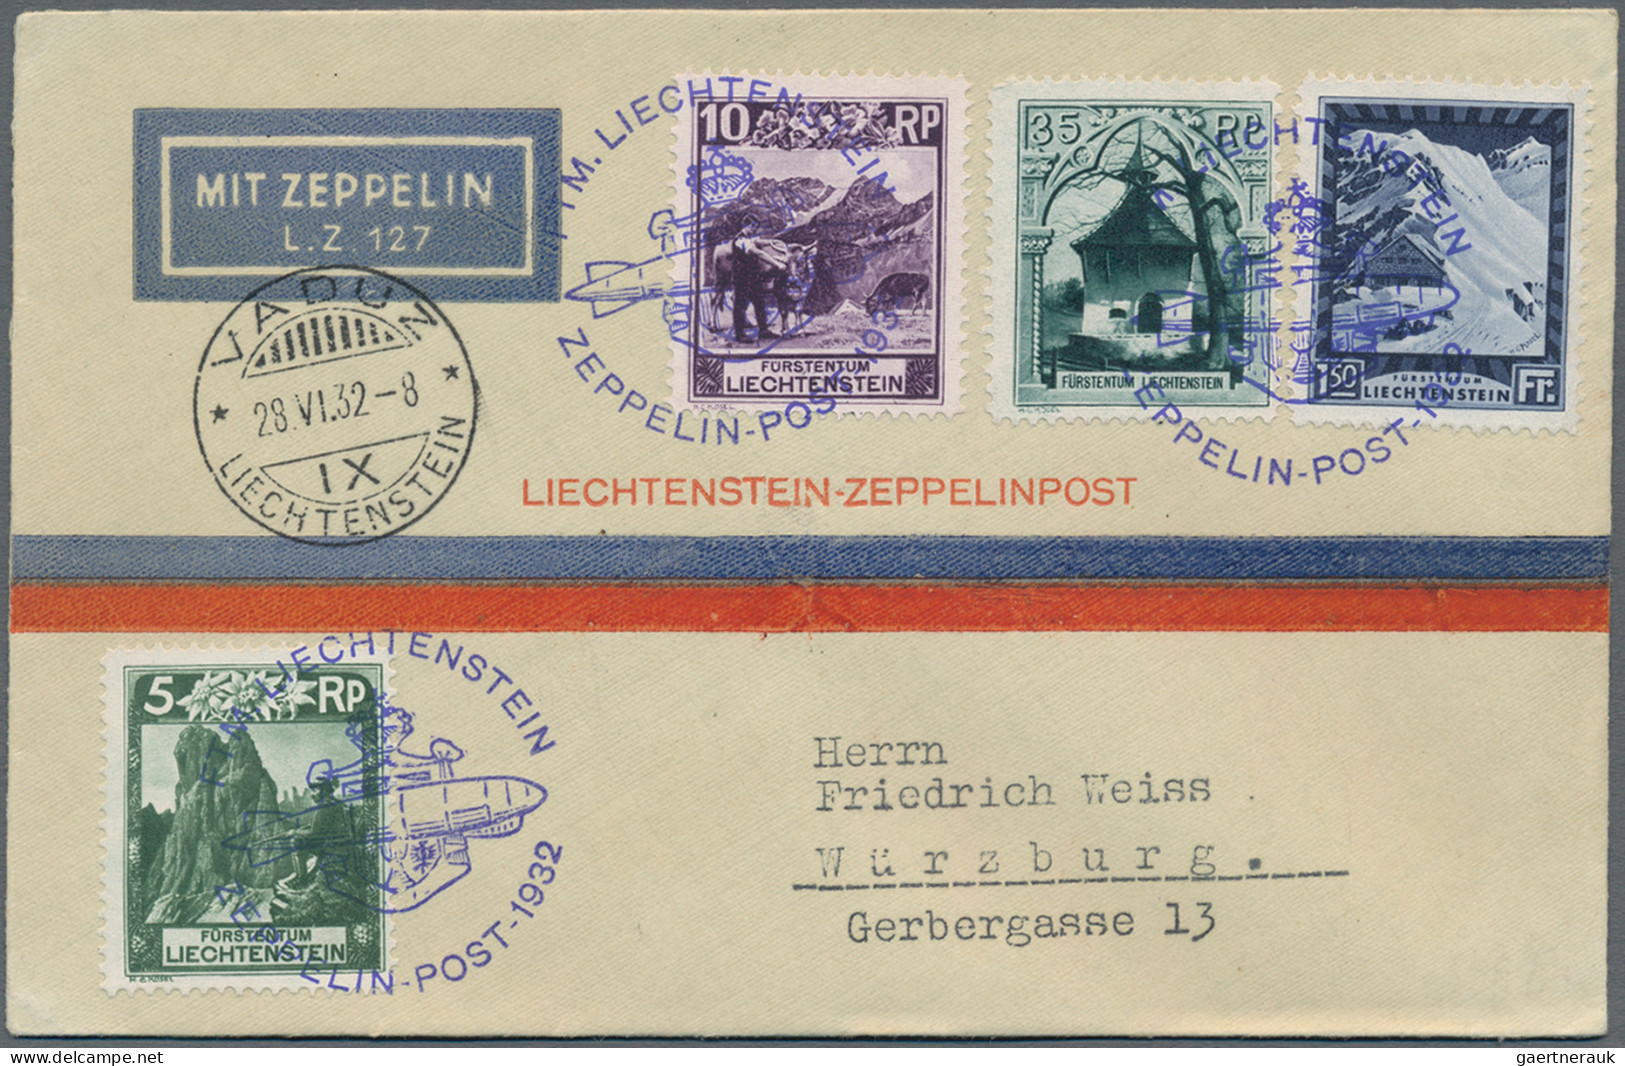 Liechtenstein: 1930/1962, sauberes Lot mit 20 Erst- oder Sonderflugpostbelegen a